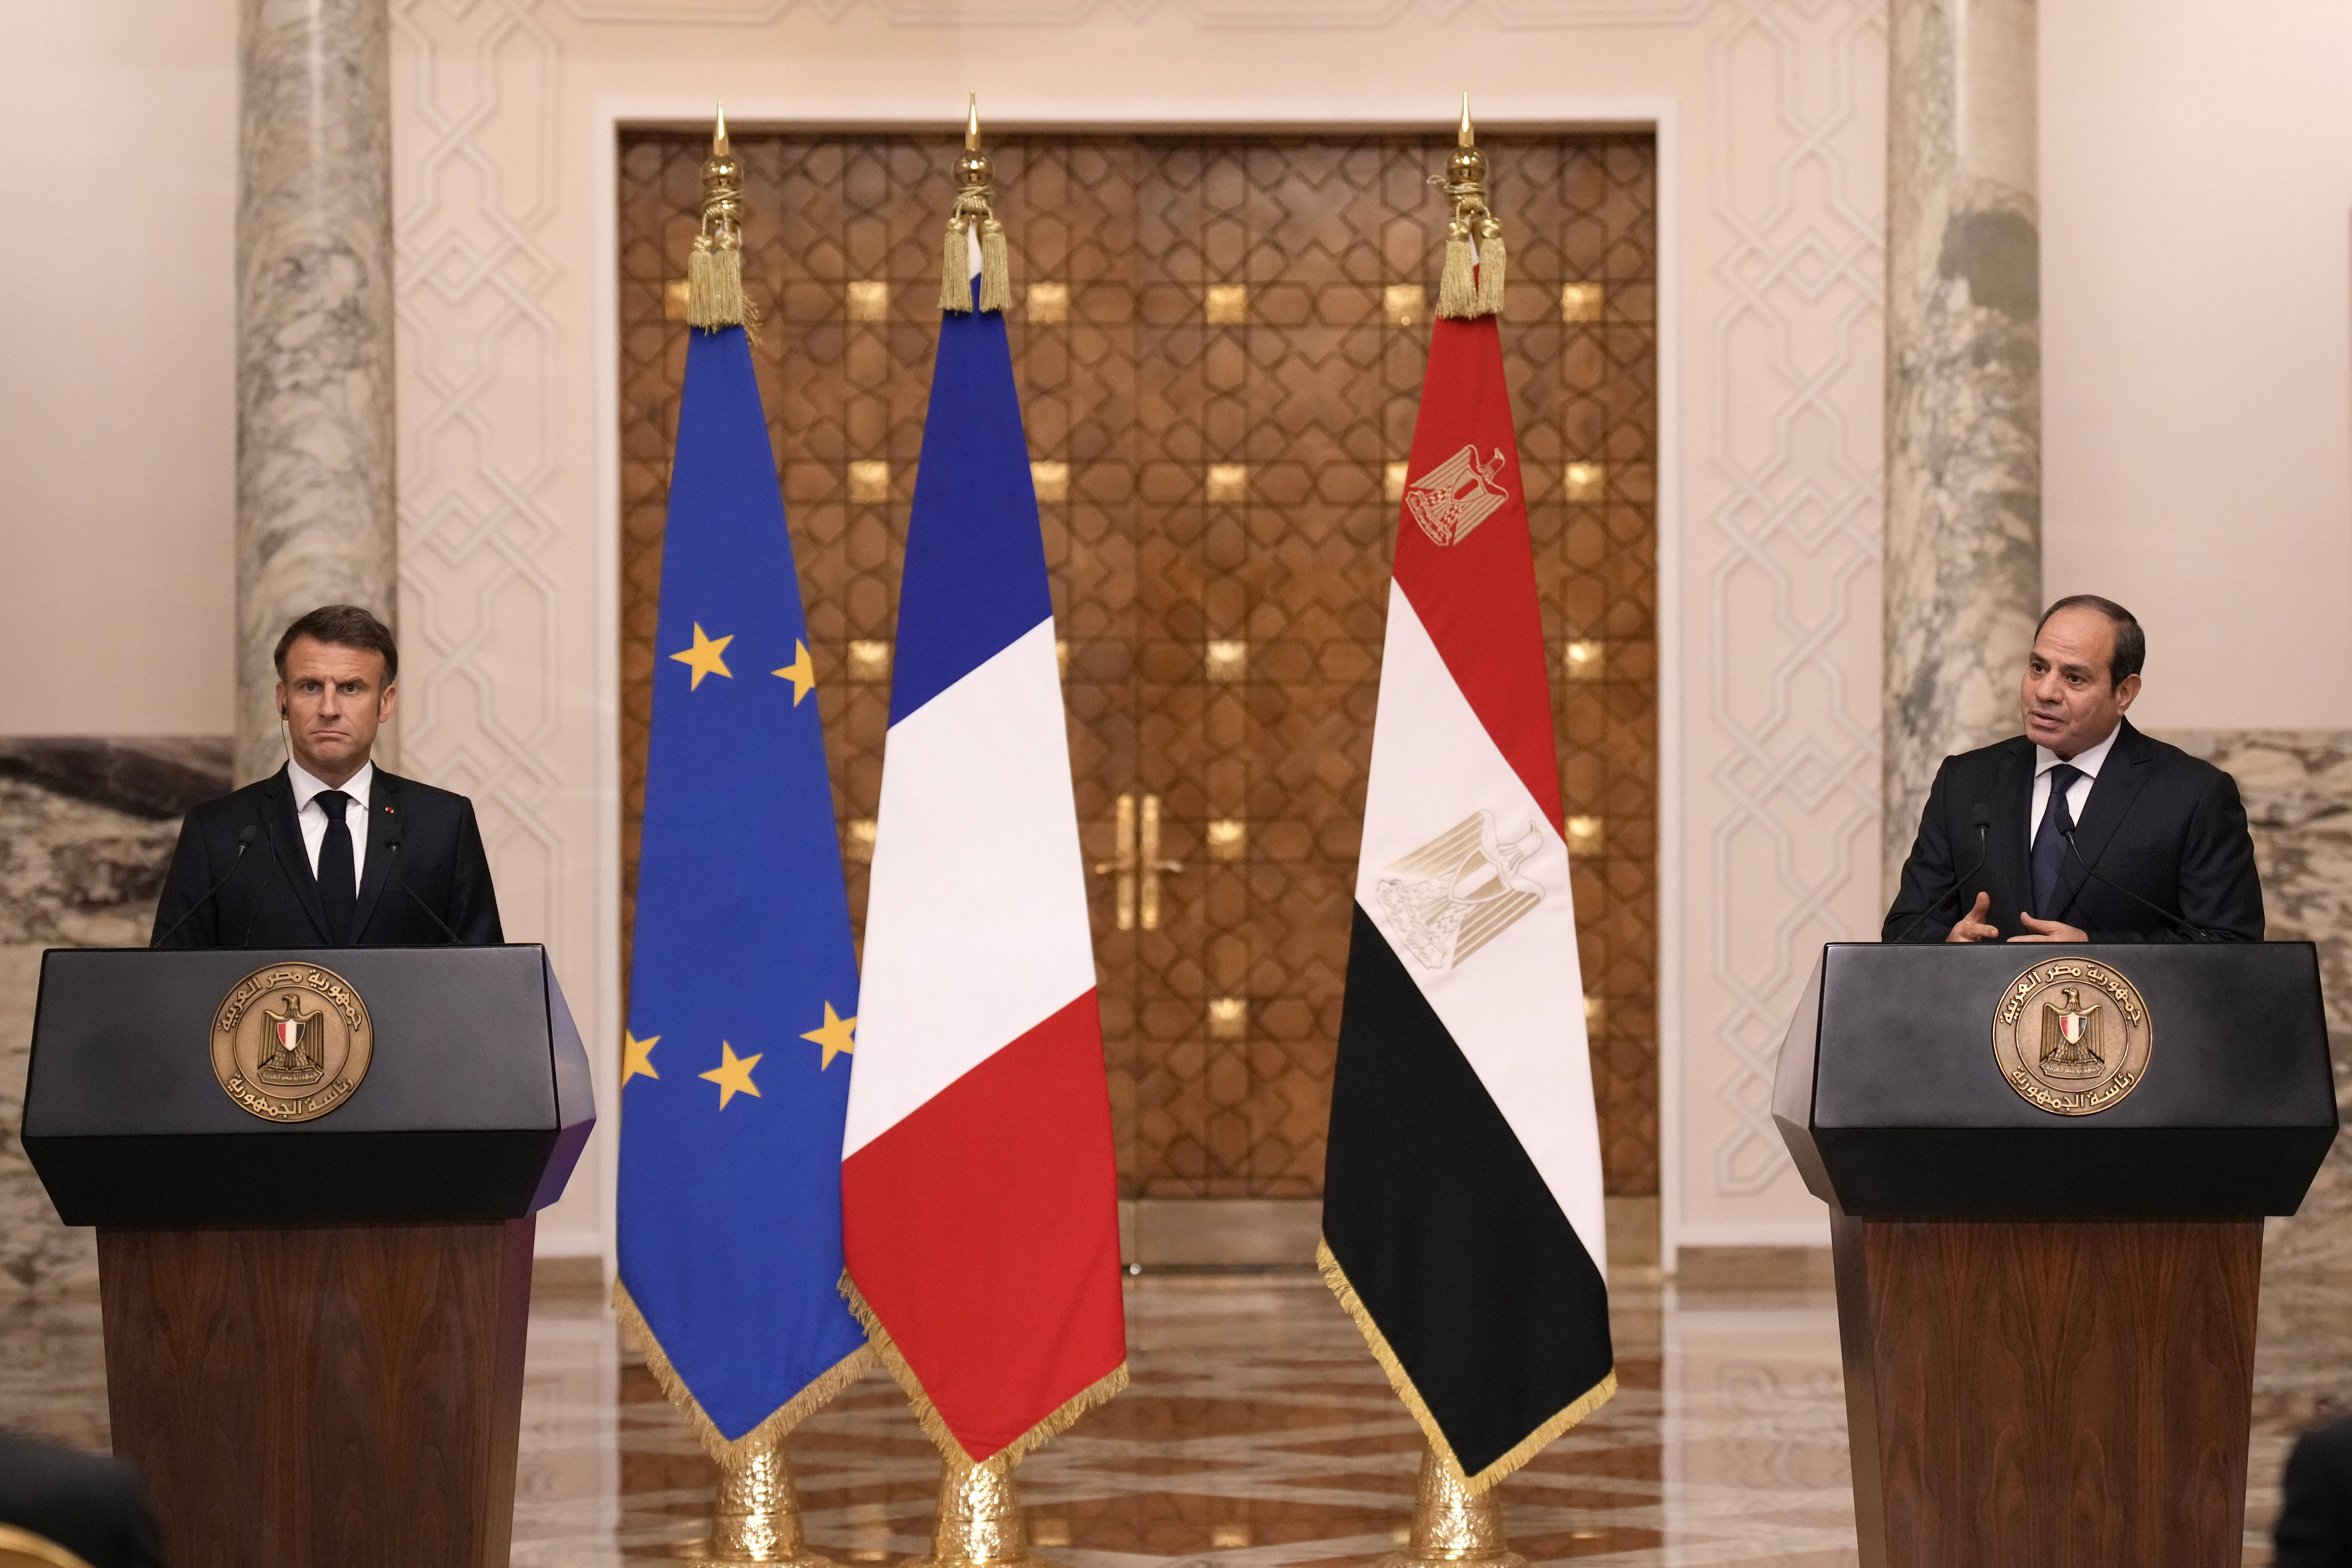 A gauche, le président français Emmanuel Macron, et à droite, le président égyptien Abdel Fattah al-Sissi. — © Christophe Ena / keystone-sda.ch